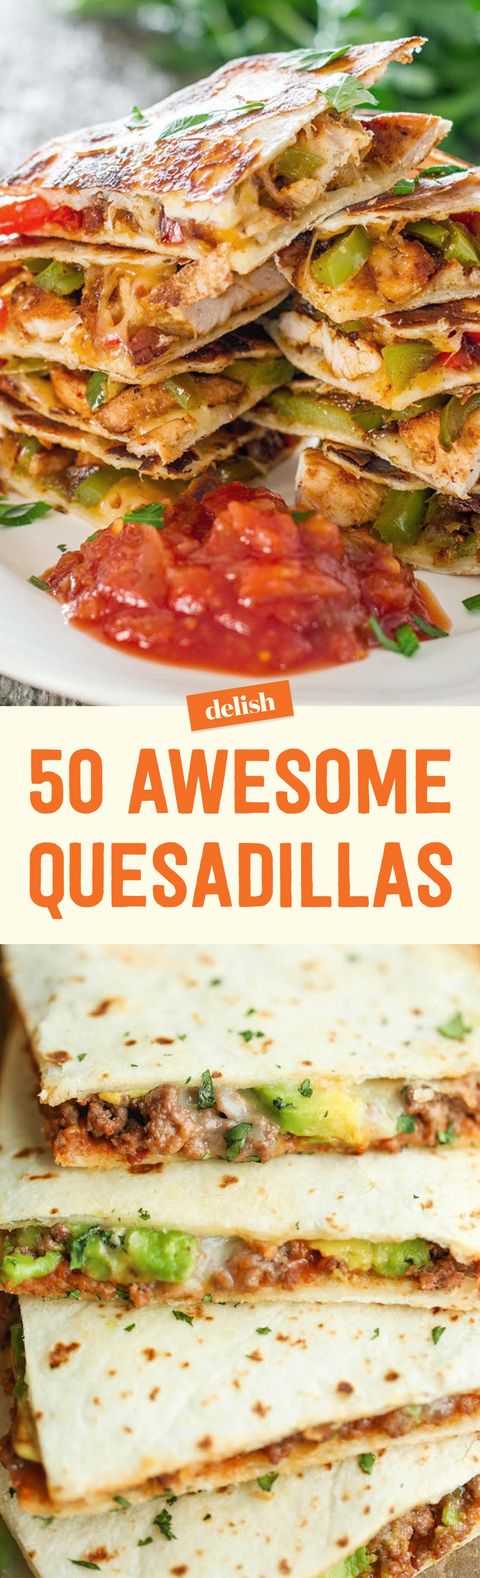 70+ Best Quesadilla Recipes - How to Make Easy Quesadillas—Delish.com